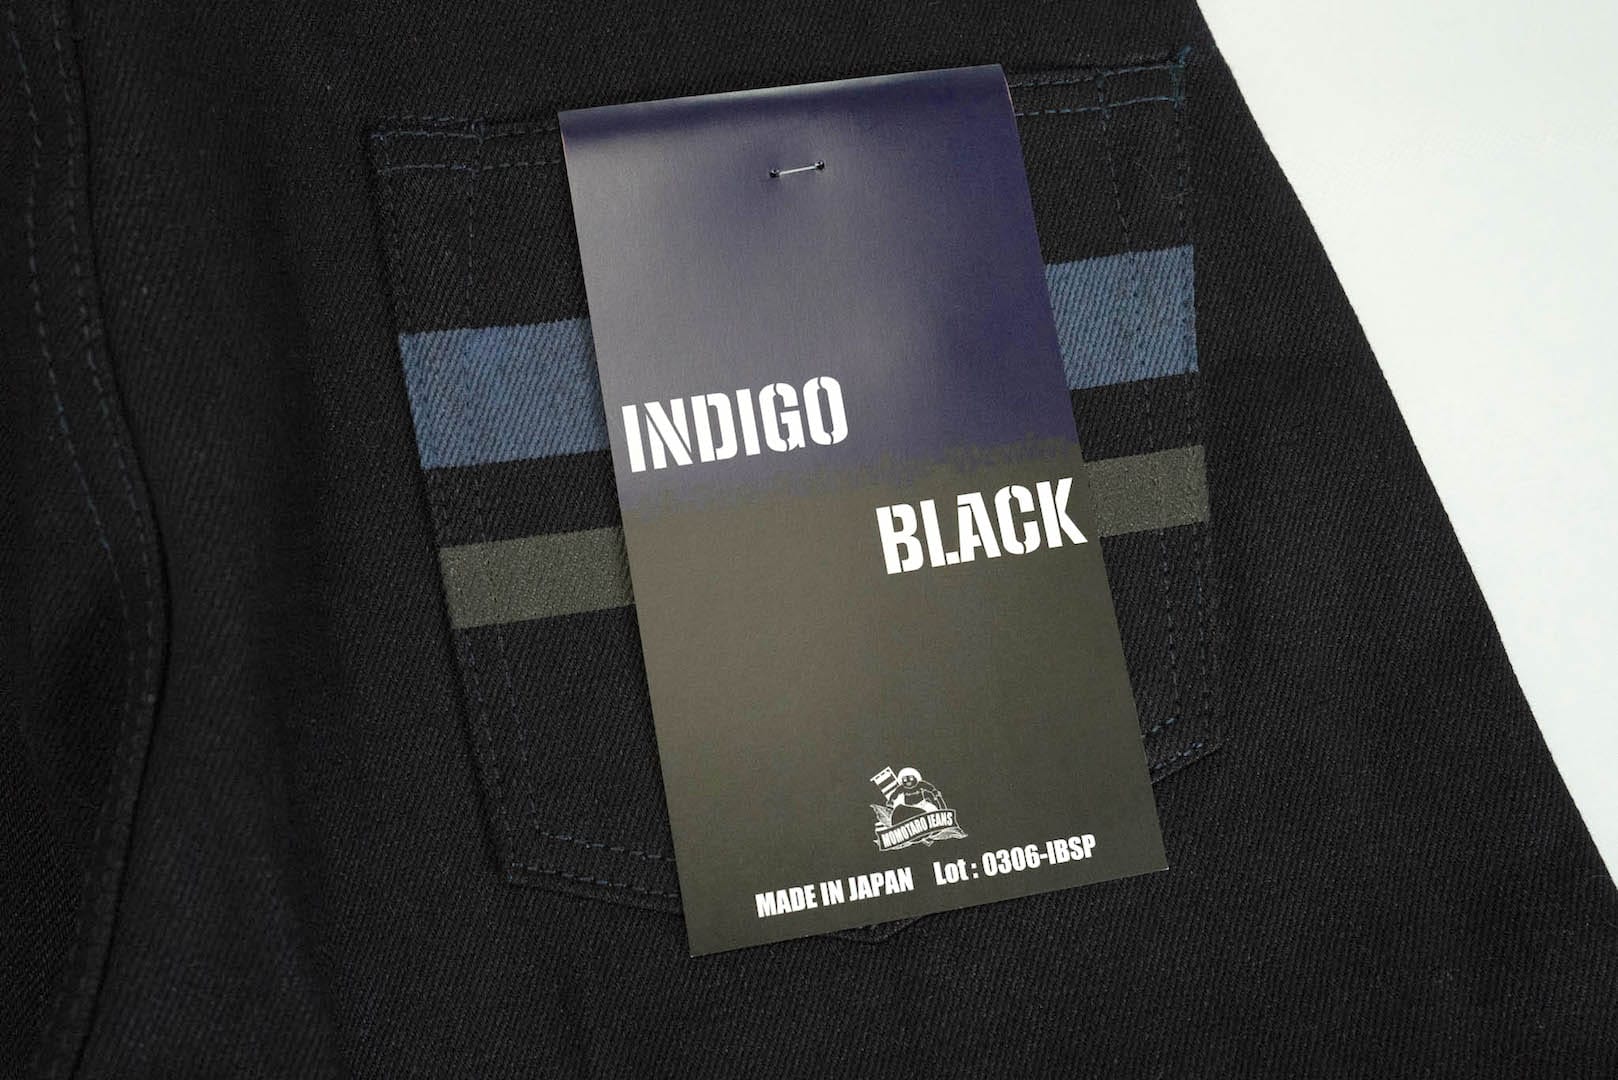 Momotaro 15.7oz 'Indigo X Black' 0306-IBSP Denim (Slim Tapered Fit)